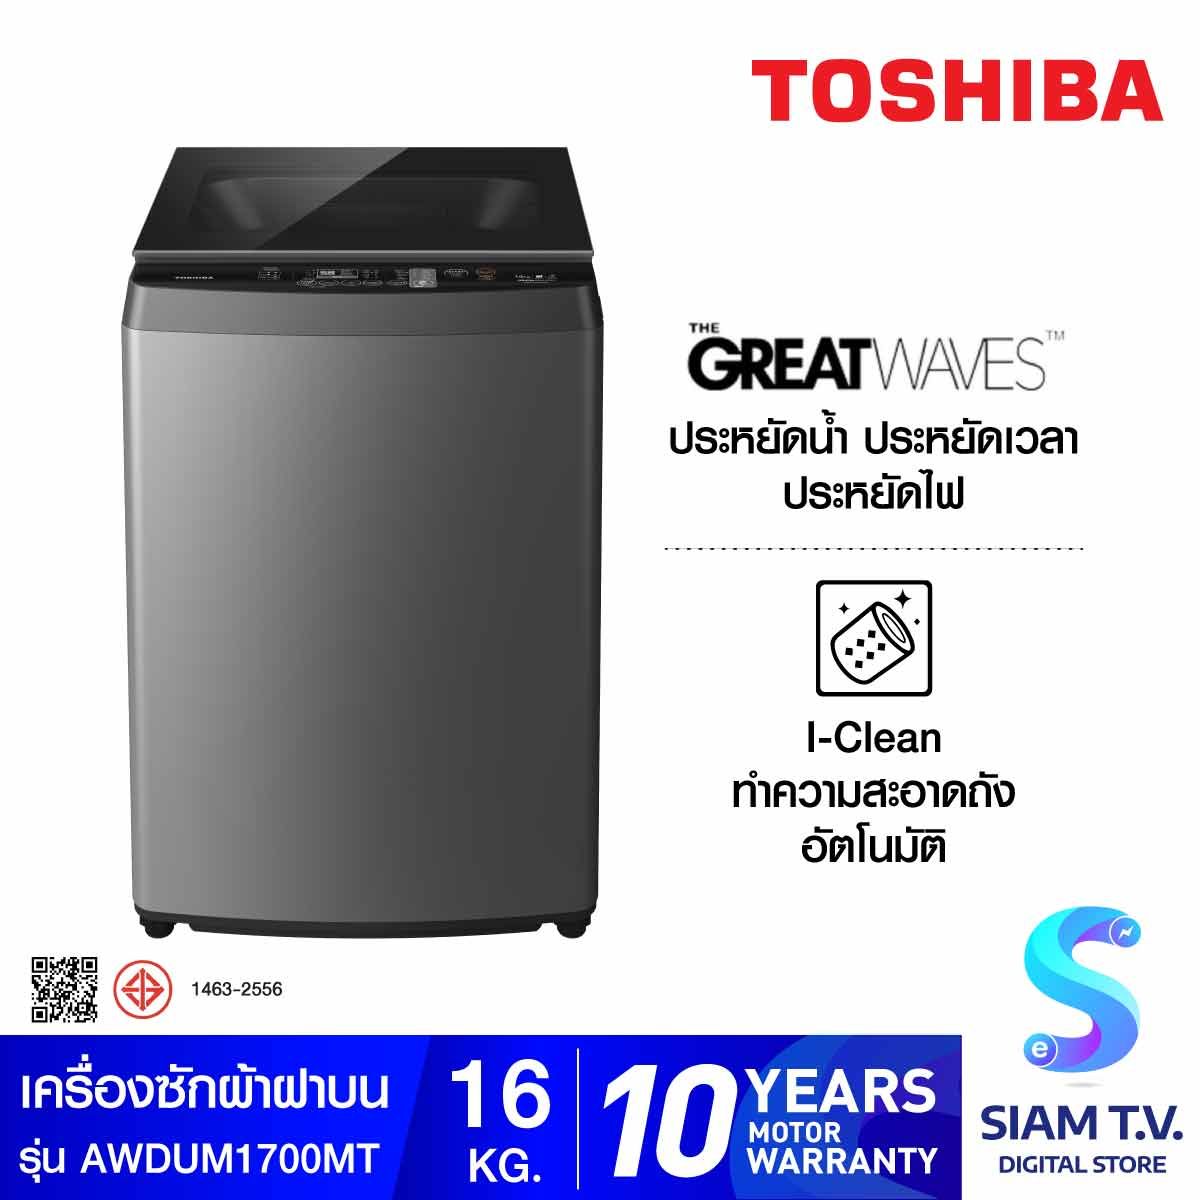 TOSHIBA เครื่องซักผ้าฝาบน 16KG สีดำ รุ่น AW-DUM1700MT(SG)